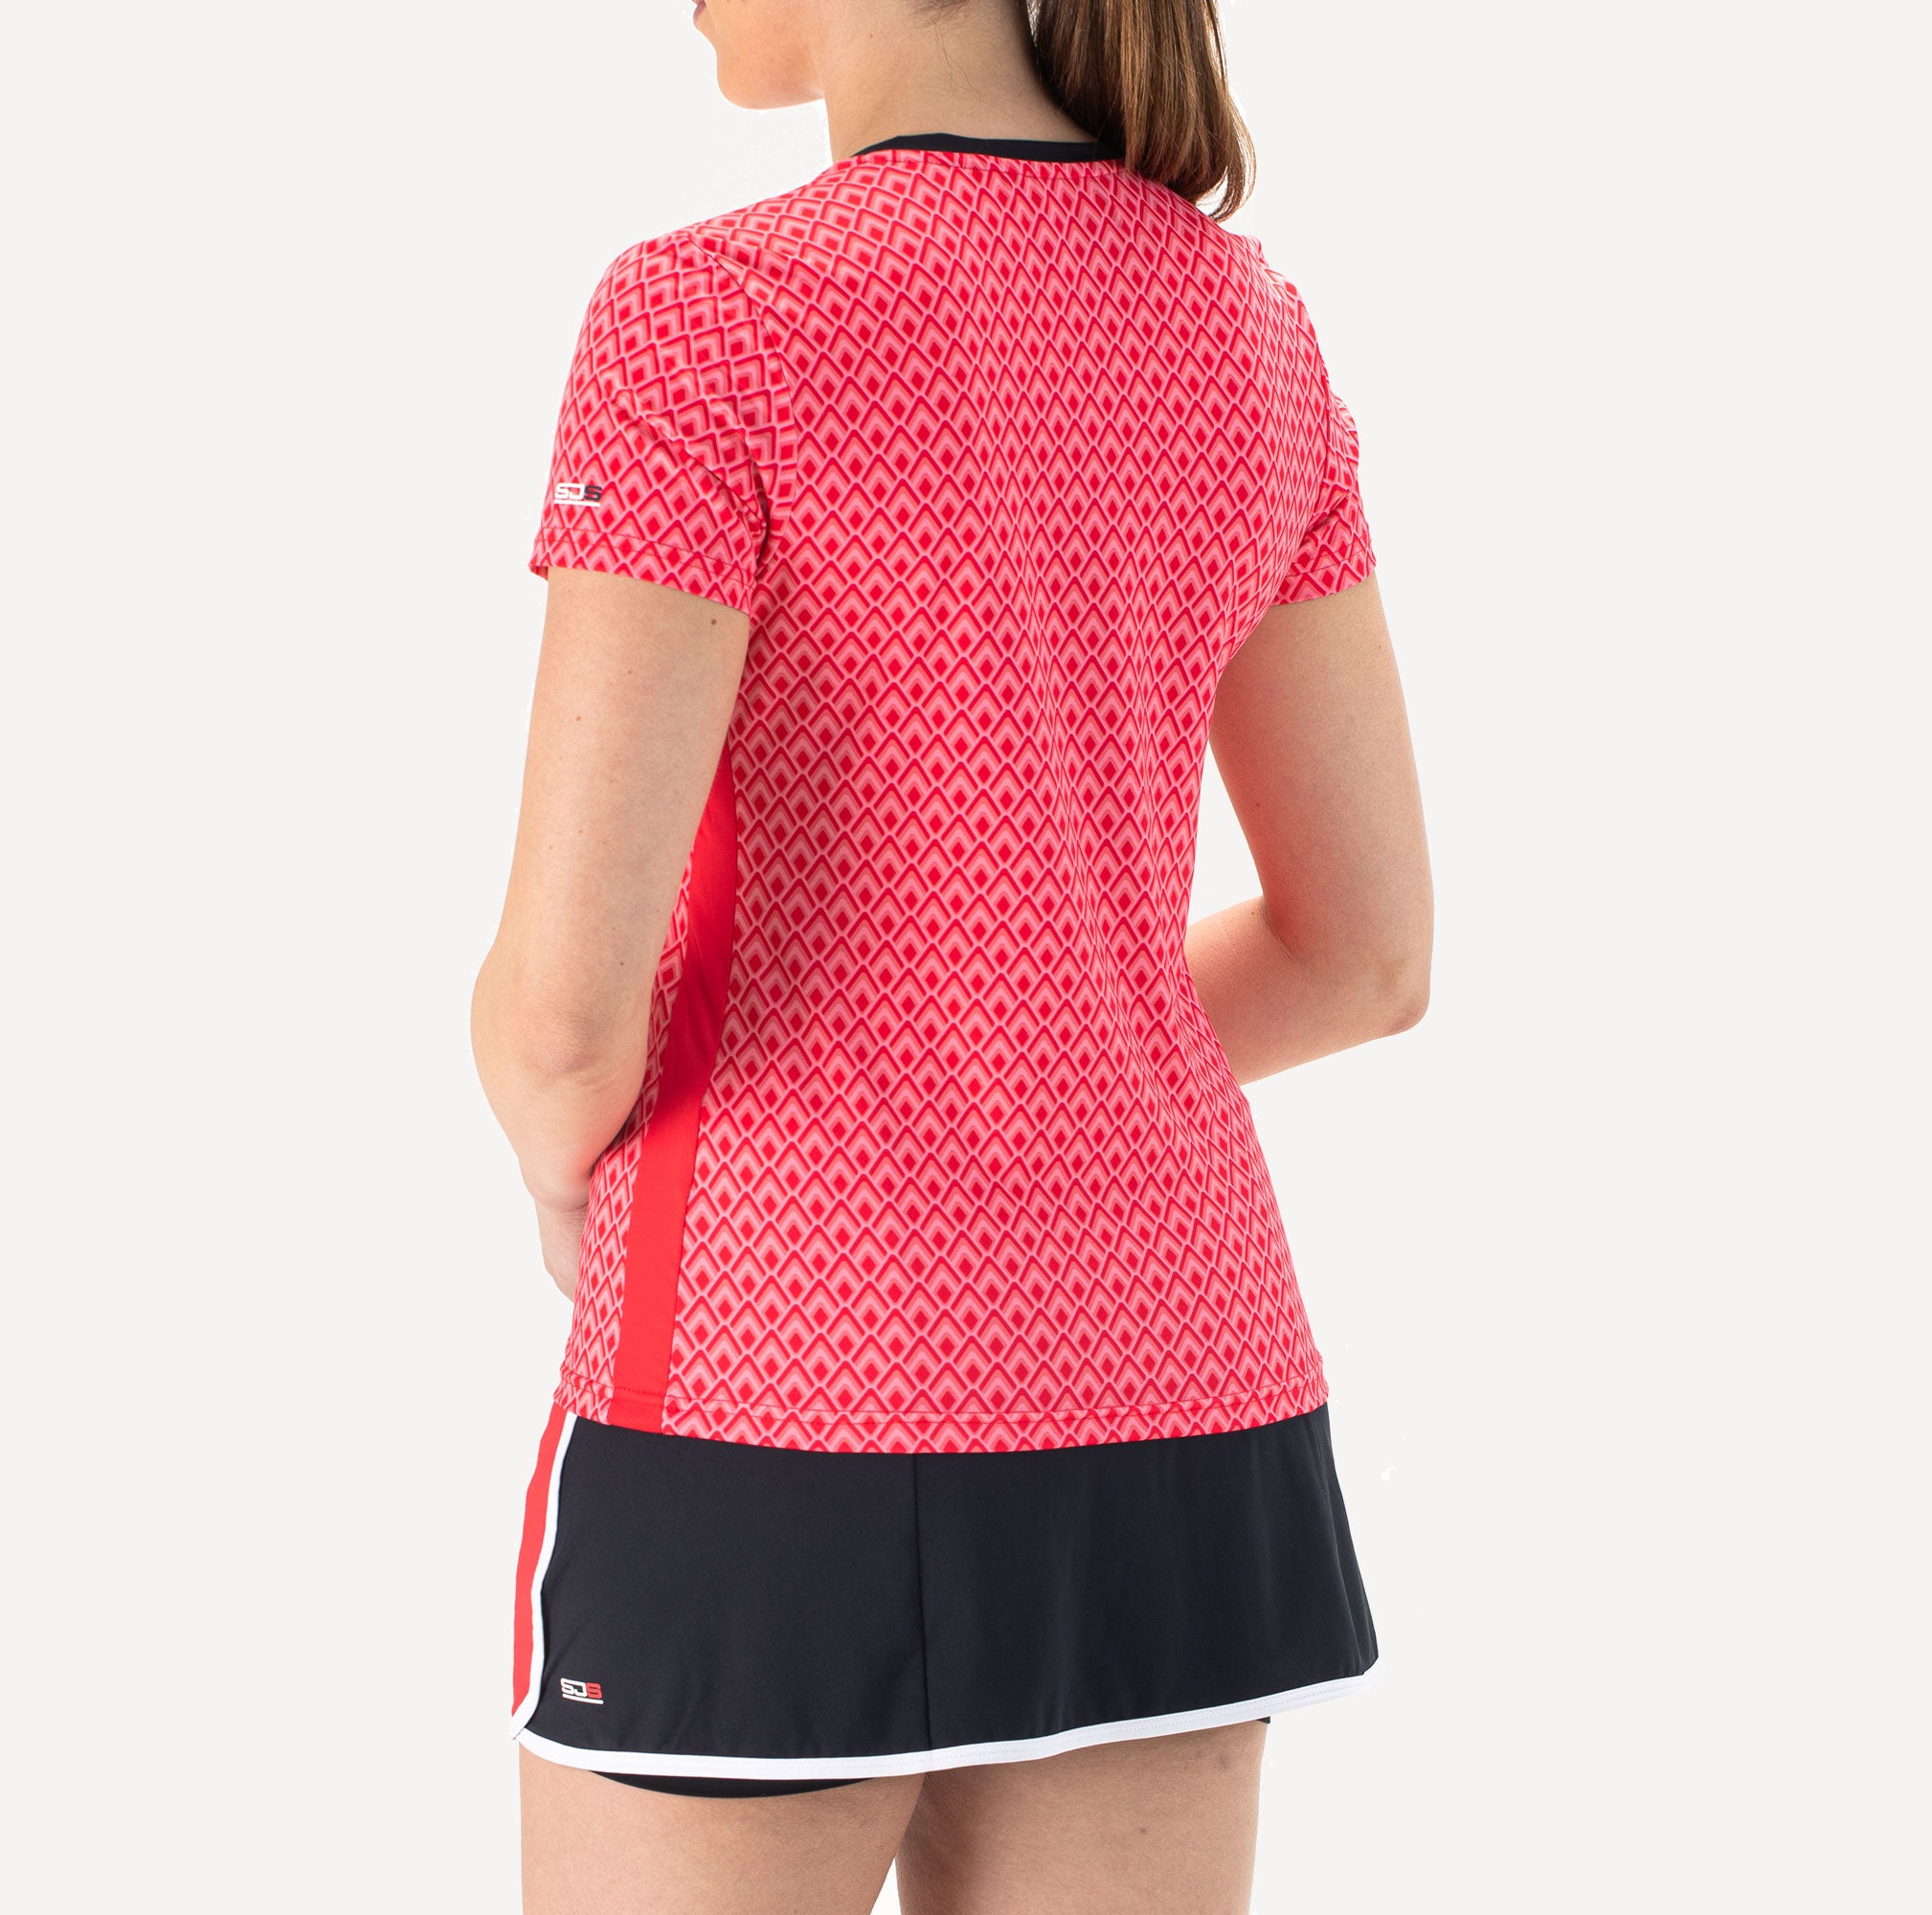 Sjeng Sports Inge Women's Tennis Shirt - Red (2)